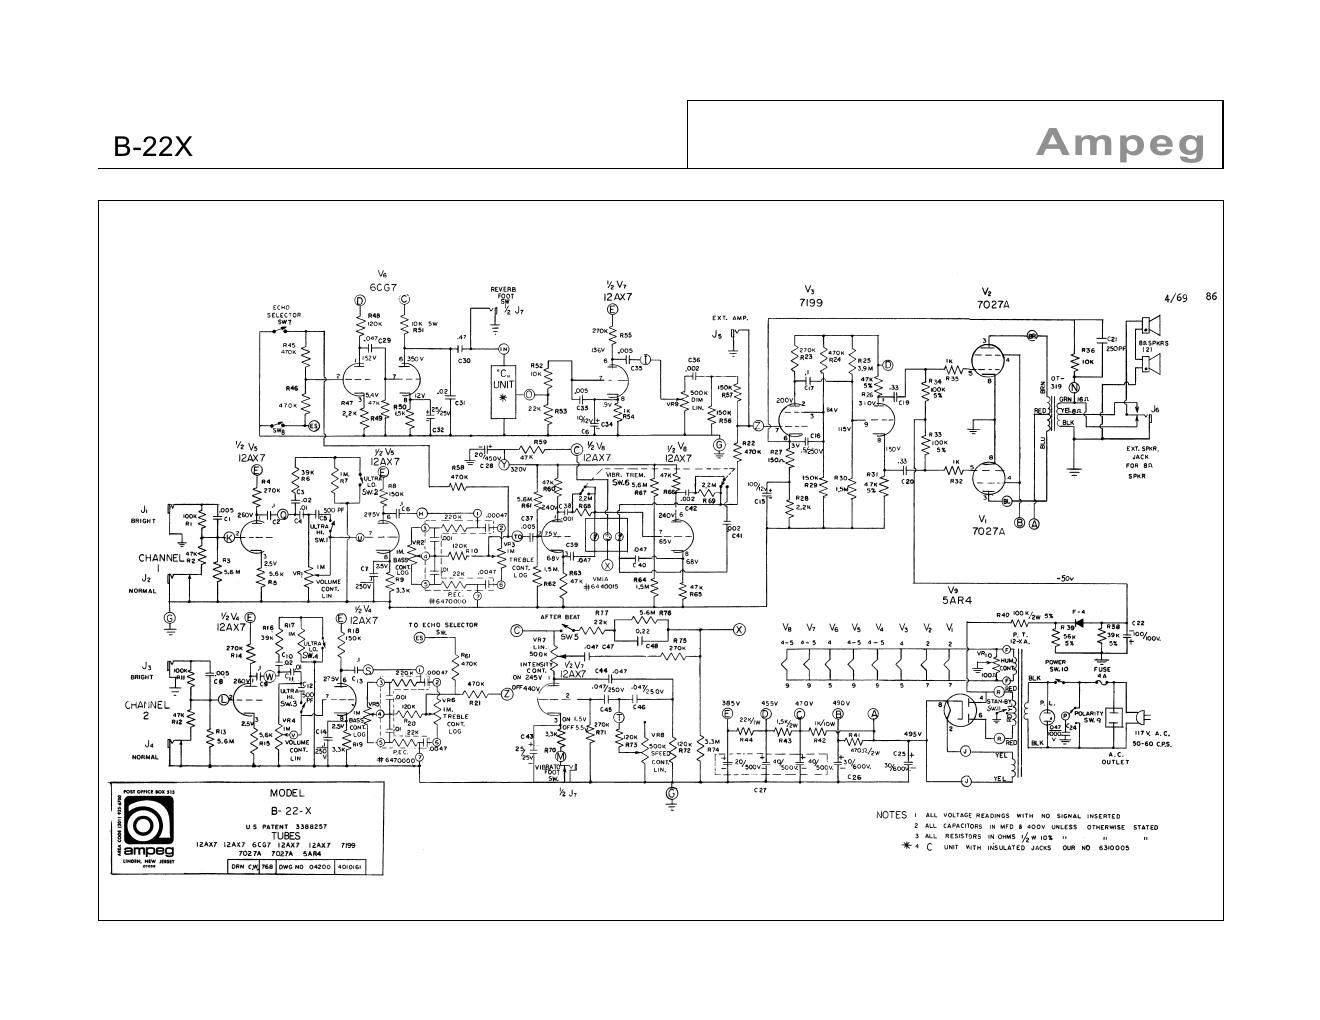 ampeg b 22 x 4 69 schematic